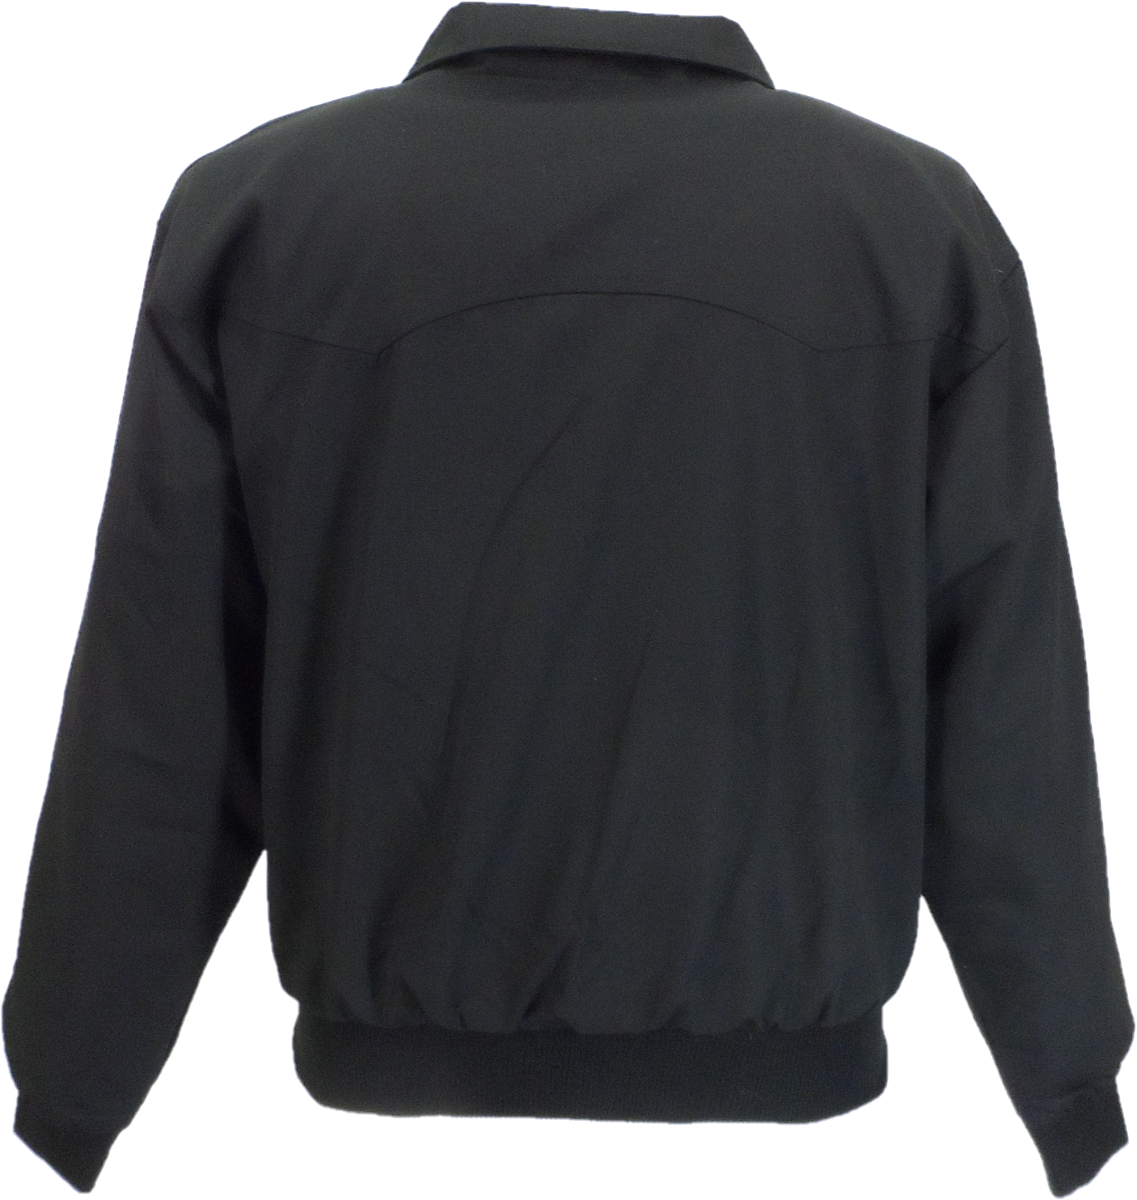 Relco Black Harrington Jacket – Mazeys UK